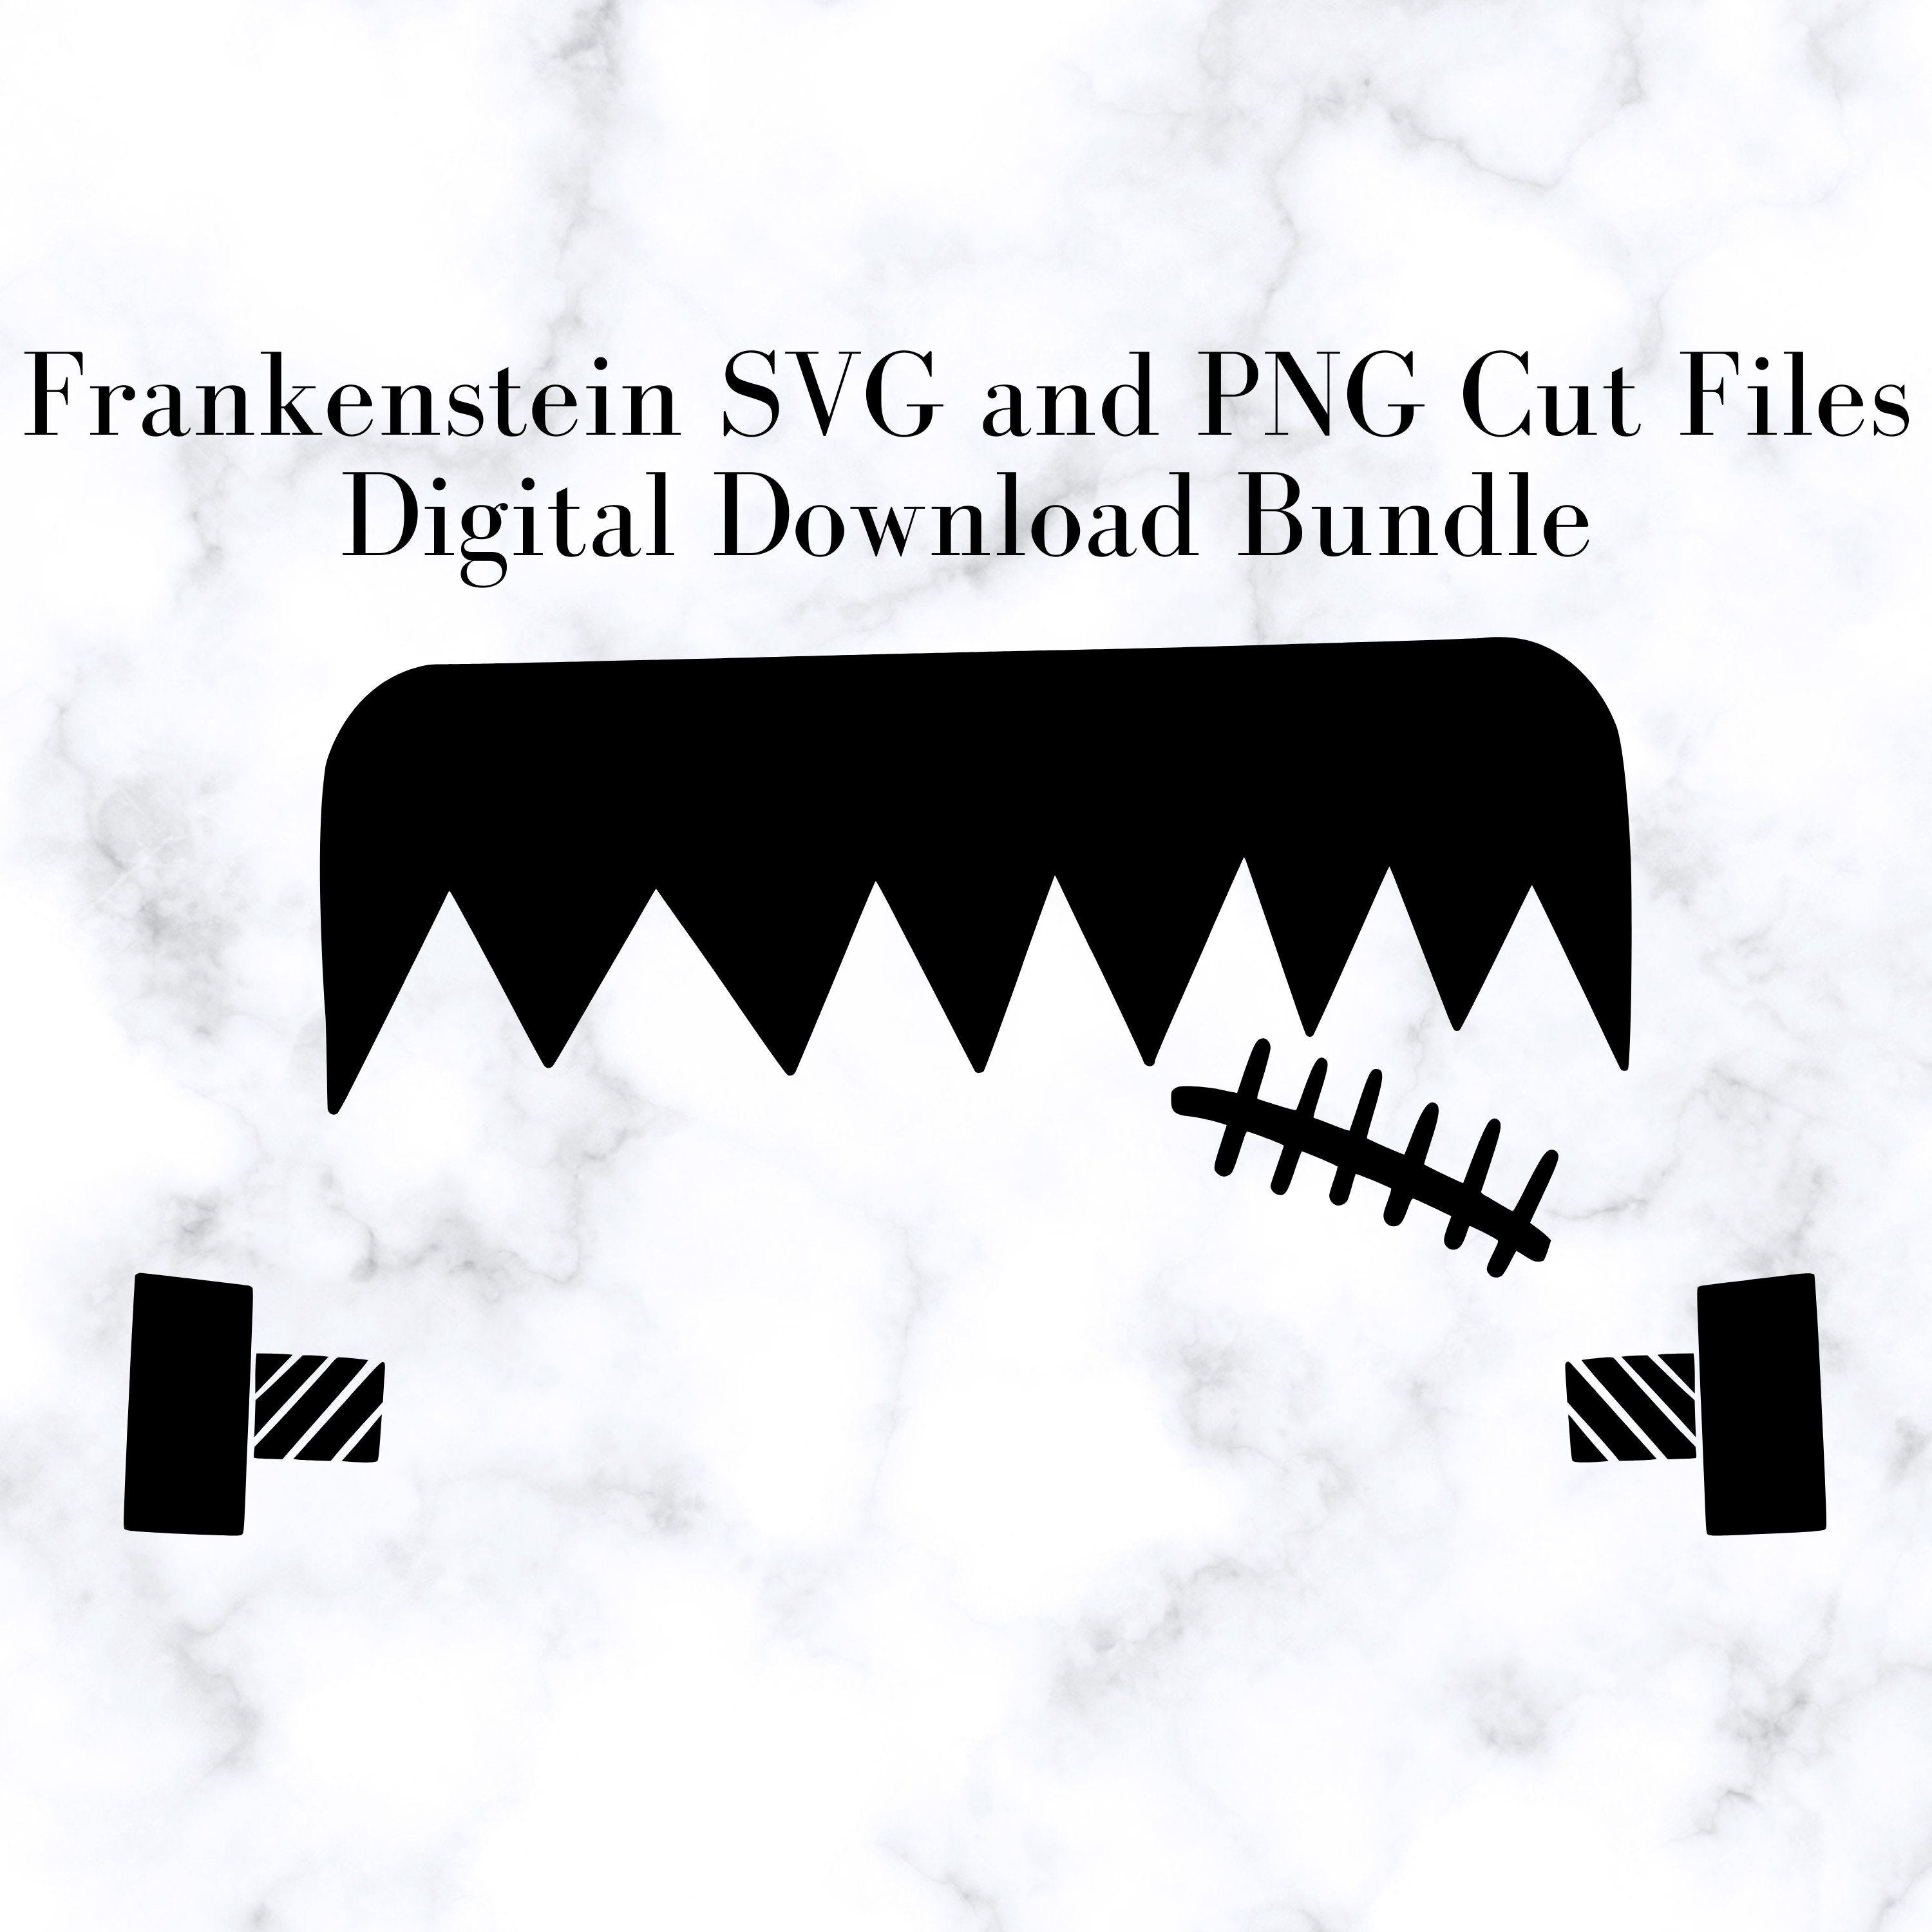 Frankenstein SVG and PNG Cut Files, Digital Download Bundle